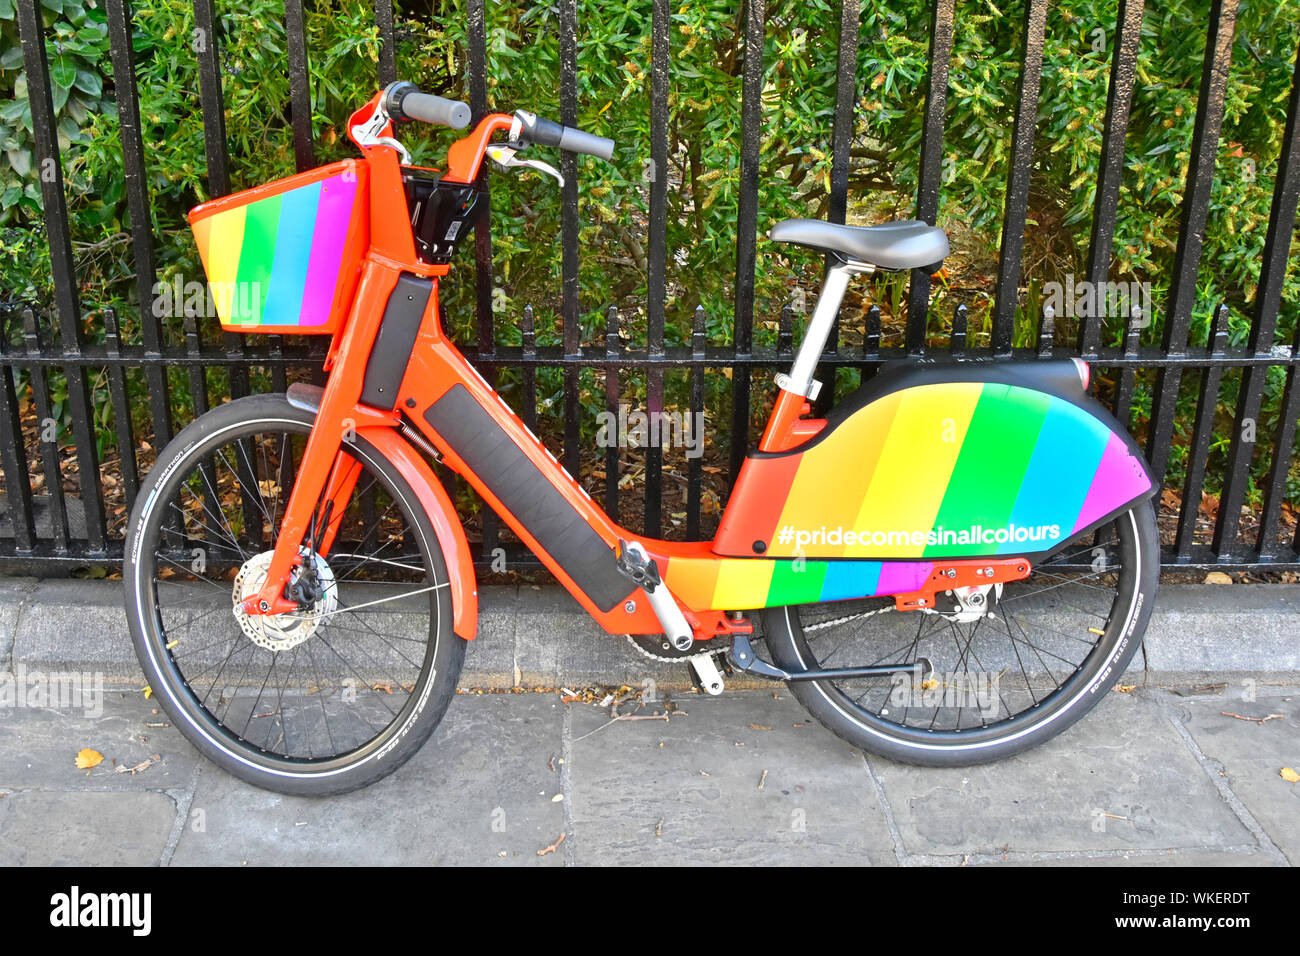 Location colorés dans Gay Pride drapeau arc-en-ciel de couleurs sur un GPS tracker app Uber pédale électrique vélo garé à côté de Jump aider Londres Angleterre Royaume-uni garde-corps Banque D'Images